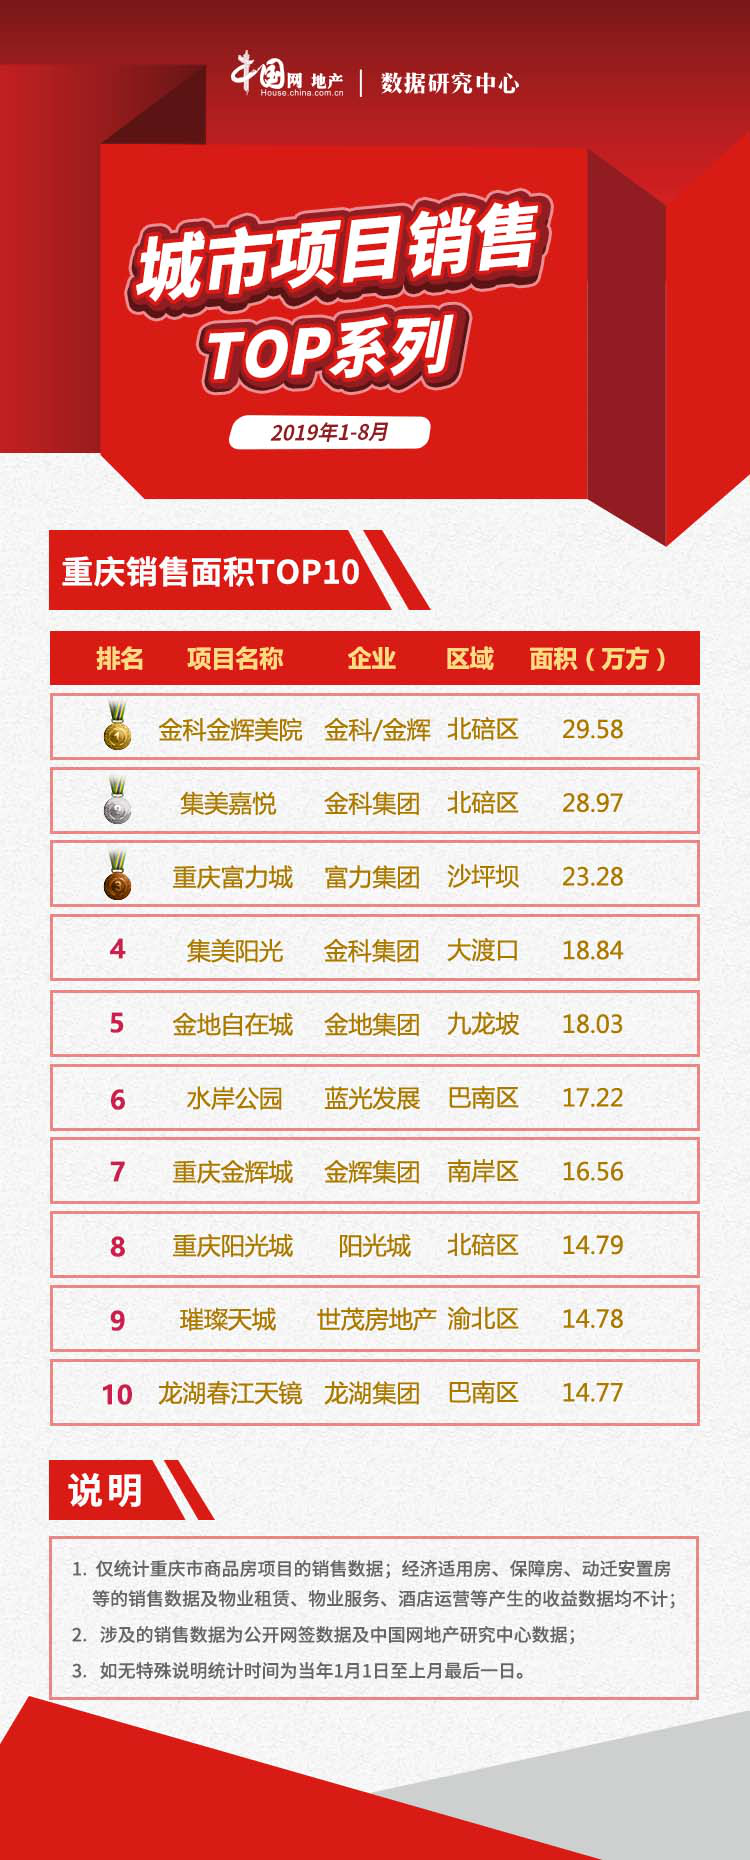 2019年1-8月重庆项目销售TOP10  供需双降 新房市场整体走弱-中国网地产